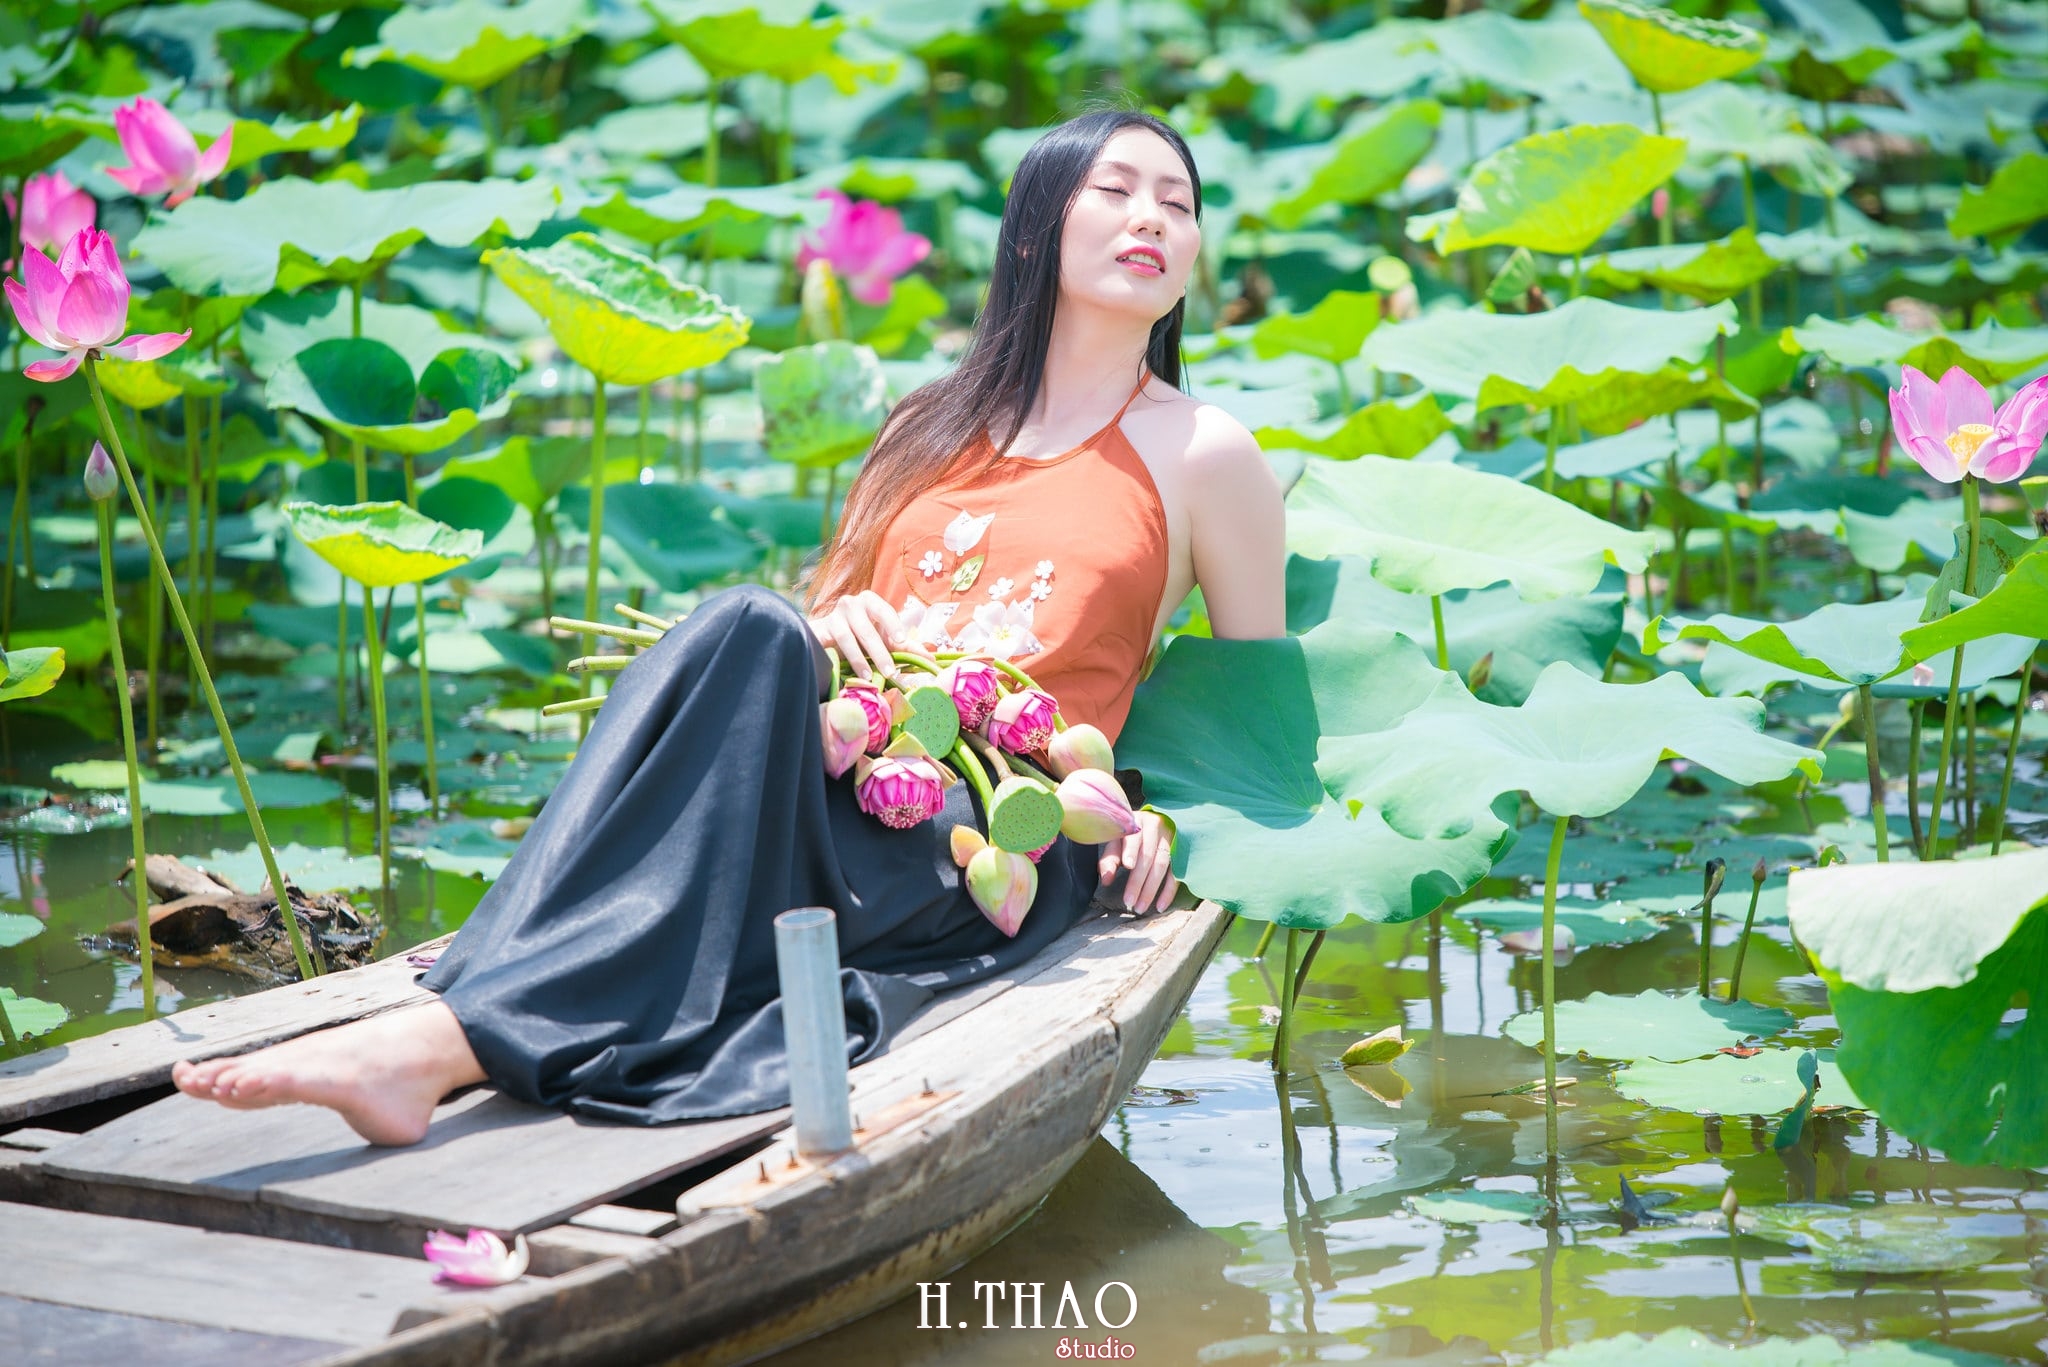 ao yem hoa sen 3 - Studio chuyên chụp ảnh với hoa sen đẹp, giá rẻ Tp.HCM – HThao Studio